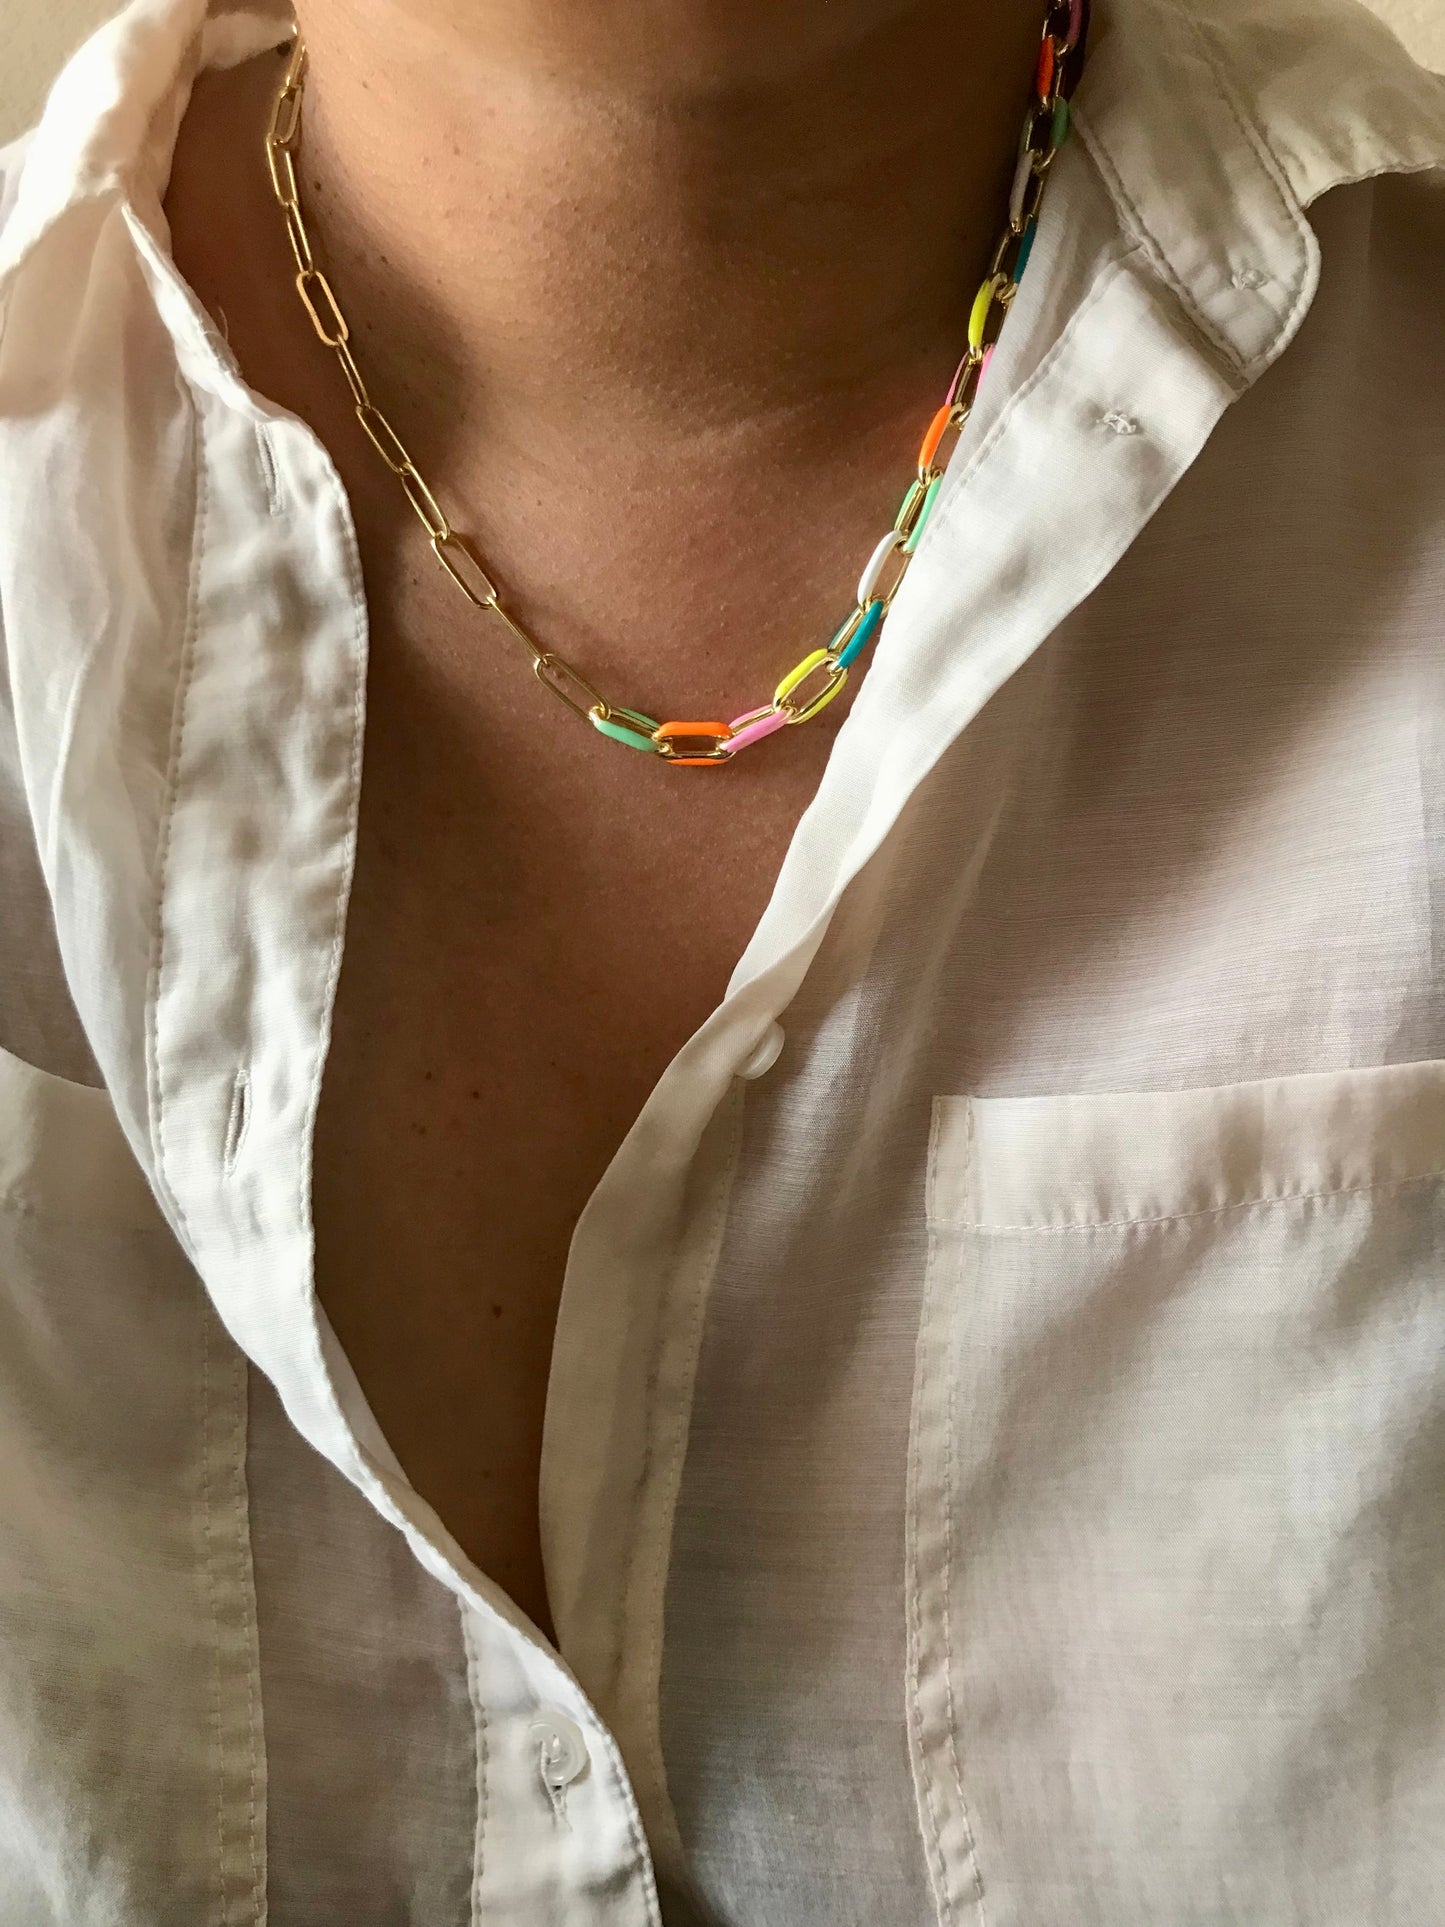 Summer link necklace